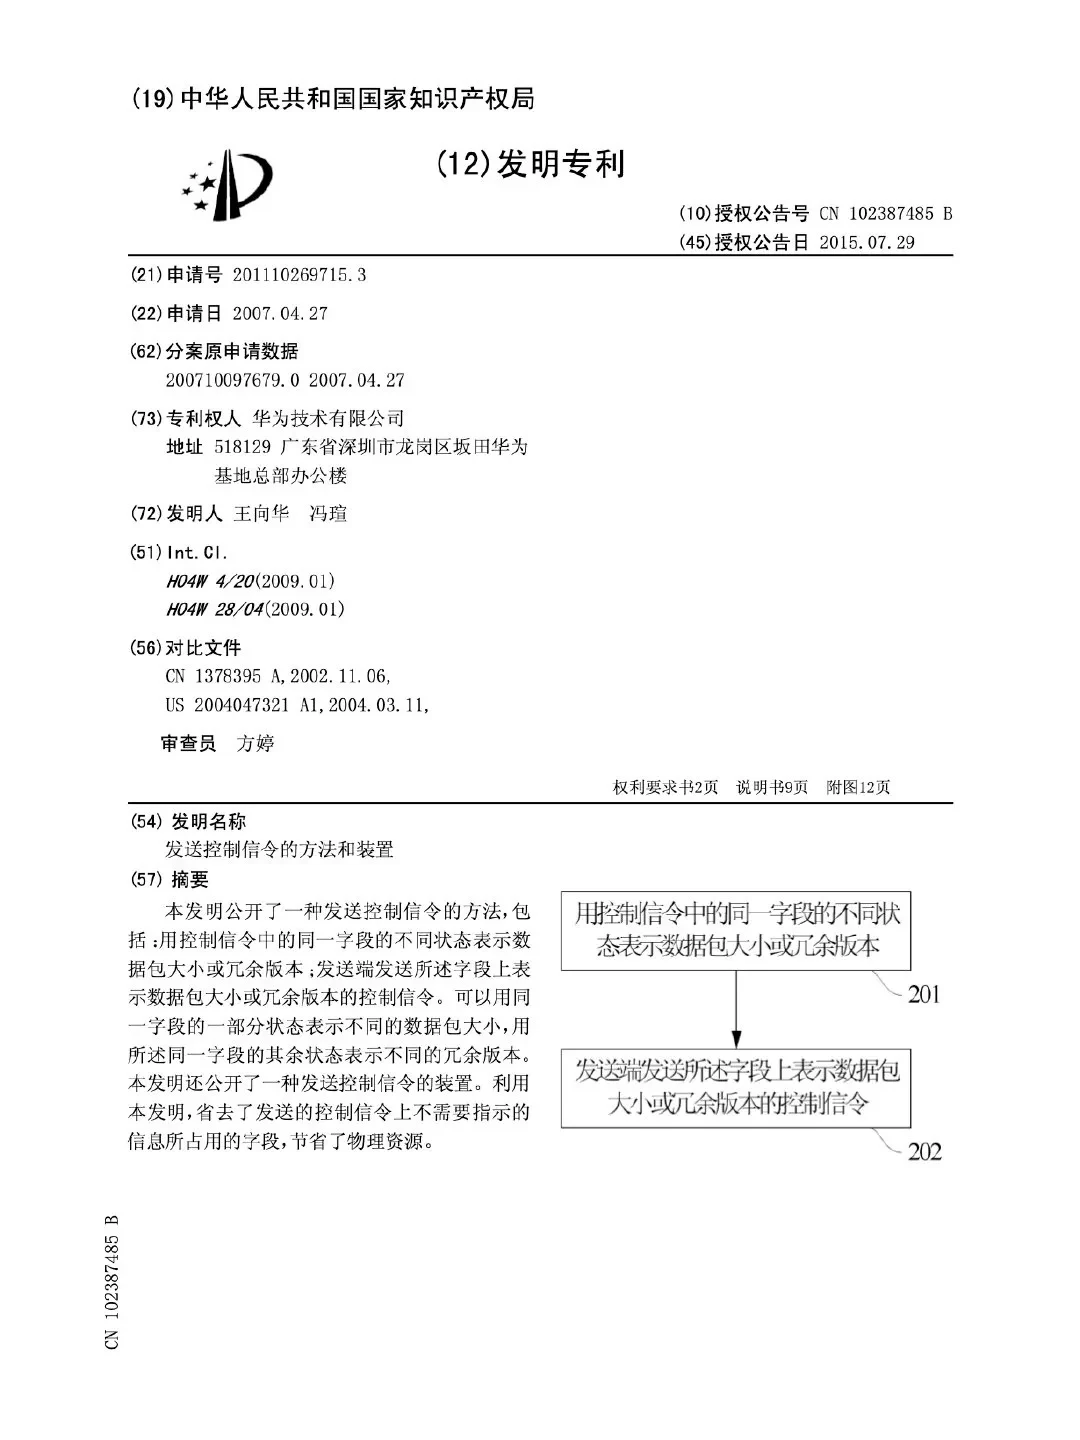 华为诉小米专利侵权已被受理，网传小米回应：双方就专利许可在积极谈判